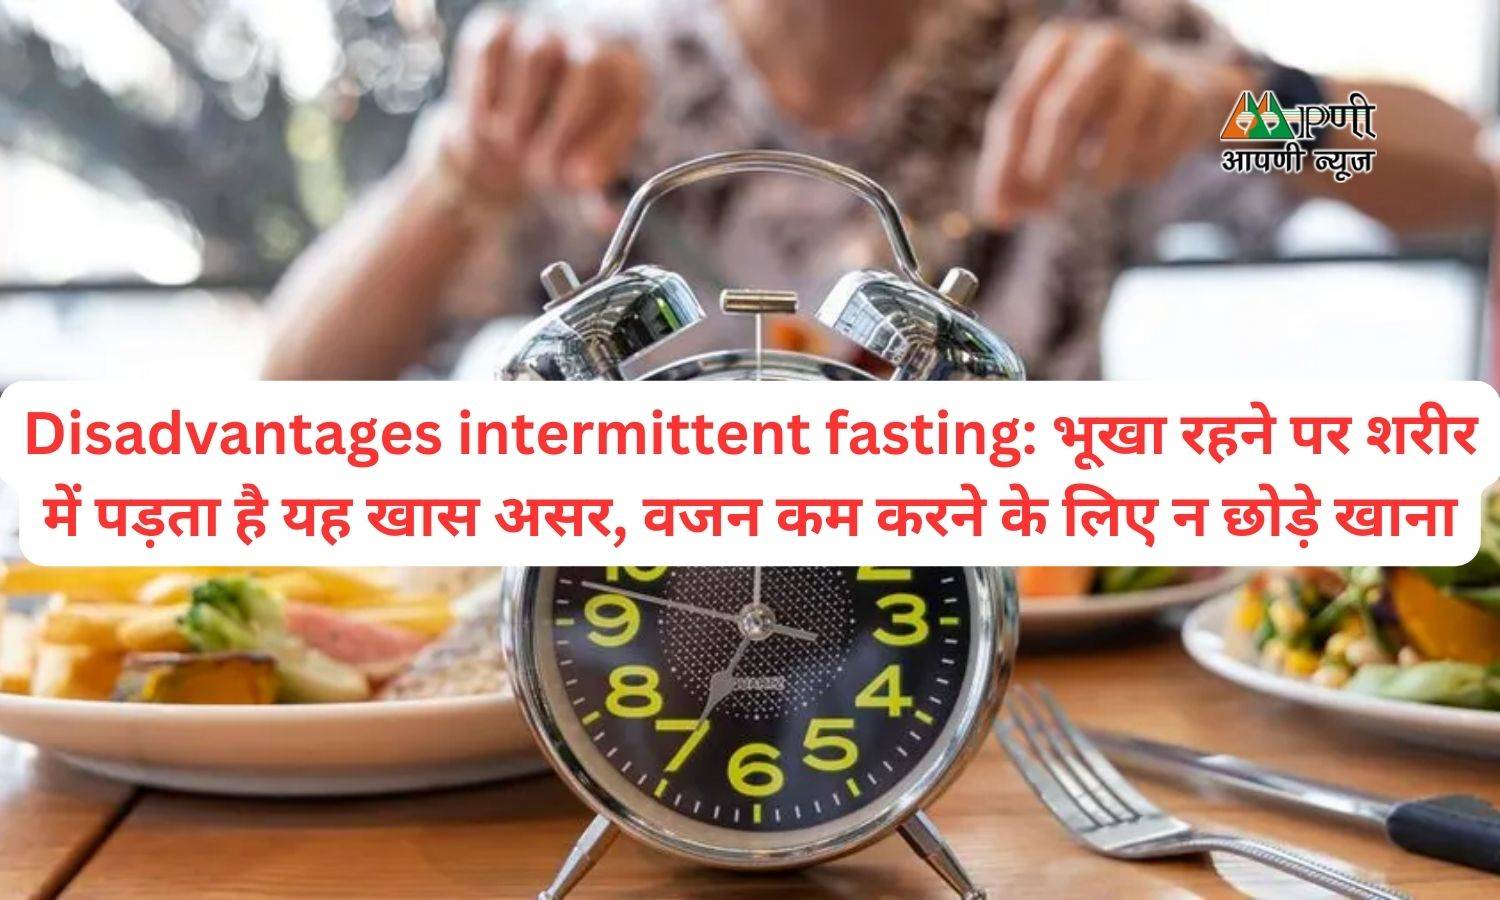 Disadvantages intermittent fasting: भूखा रहने पर शरीर में पड़ता है यह खास असर, वजन कम करने के लिए न छोड़े खाना